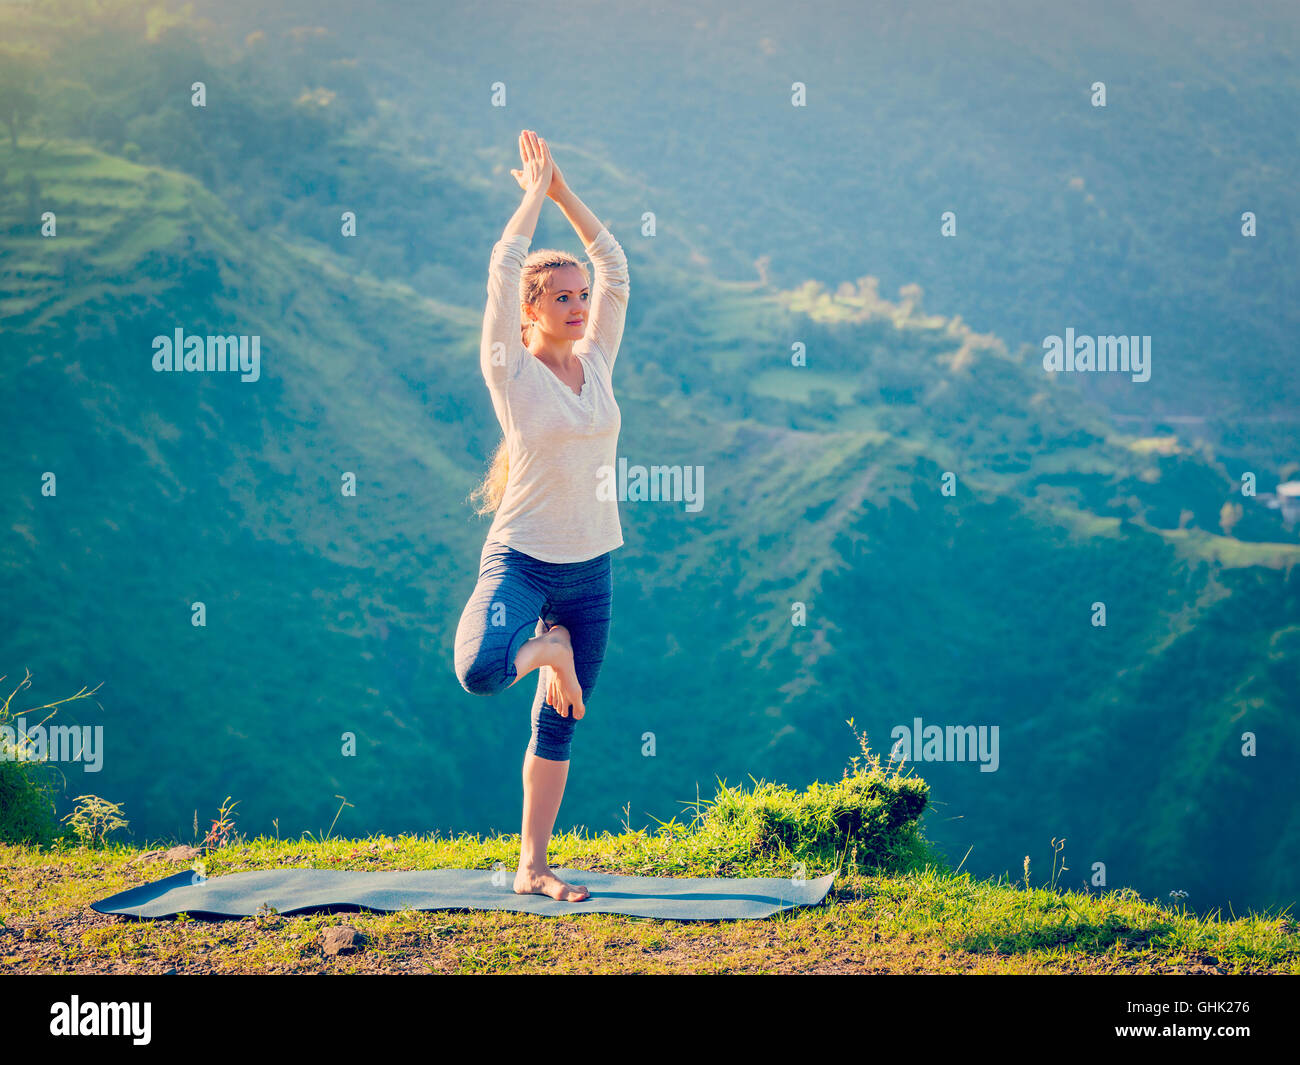 Woman doing yoga asana Vrikshasana posture de l'arbre dans les montagnes à l'extérieur Banque D'Images